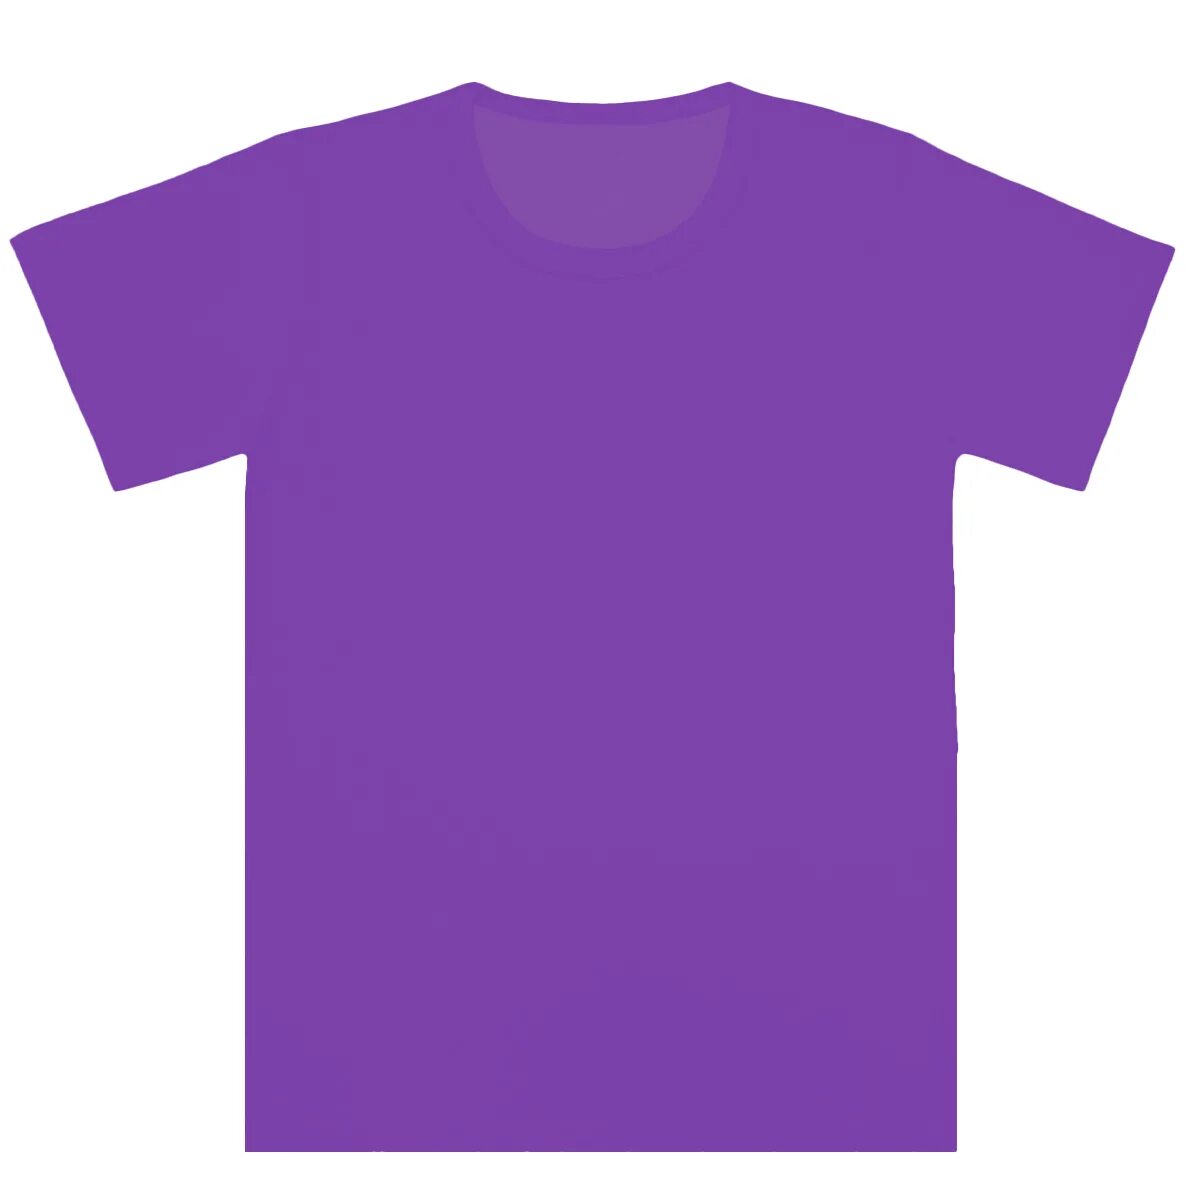 Футболка. Фиолетовая футболка. Сиреневая футболка. Футболка однотонная.